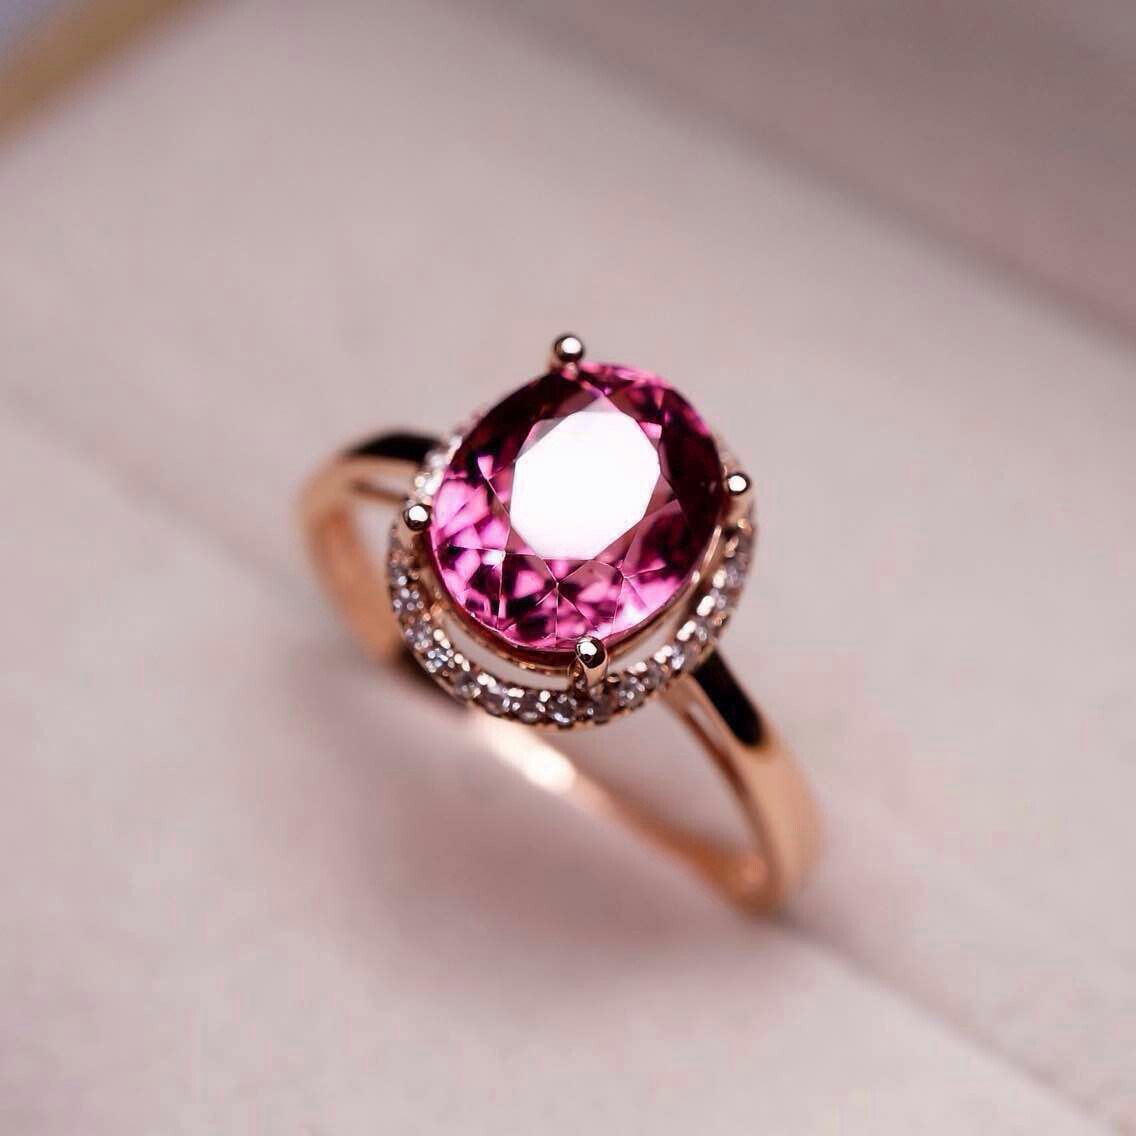 广州番禺珠宝工厂生产18k玫瑰金碧玺戒指 批发零售 女士宝石戒指